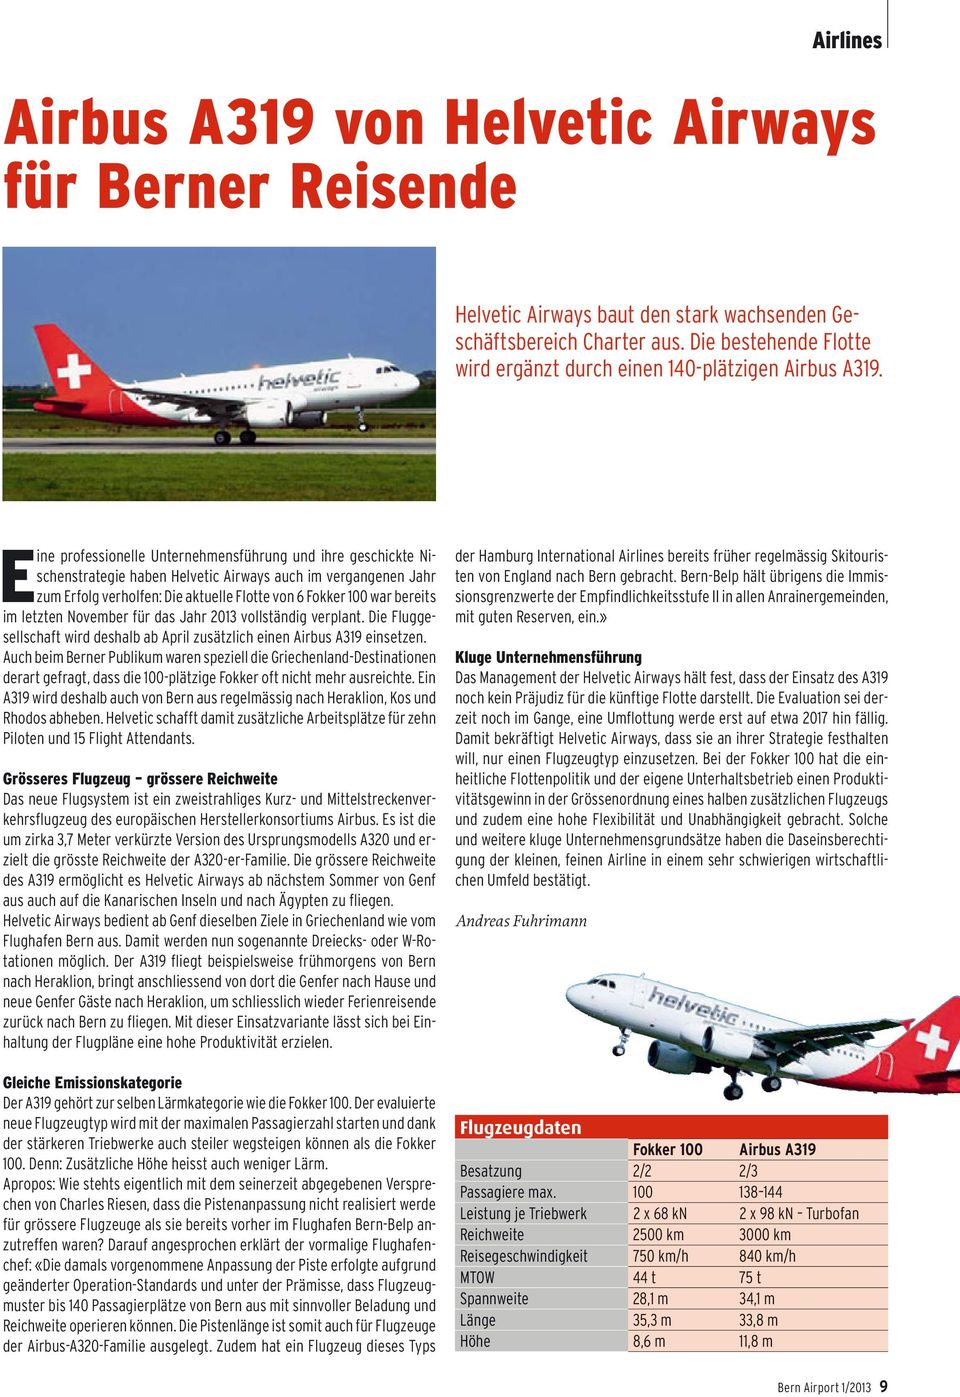 Eine professionelle Unternehmensführung und ihre geschickte Nischenstrategie haben Helvetic Airways auch im vergangenen Jahr zum Erfolg verholfen: Die aktuelle Flotte von 6 Fokker 100 war bereits im